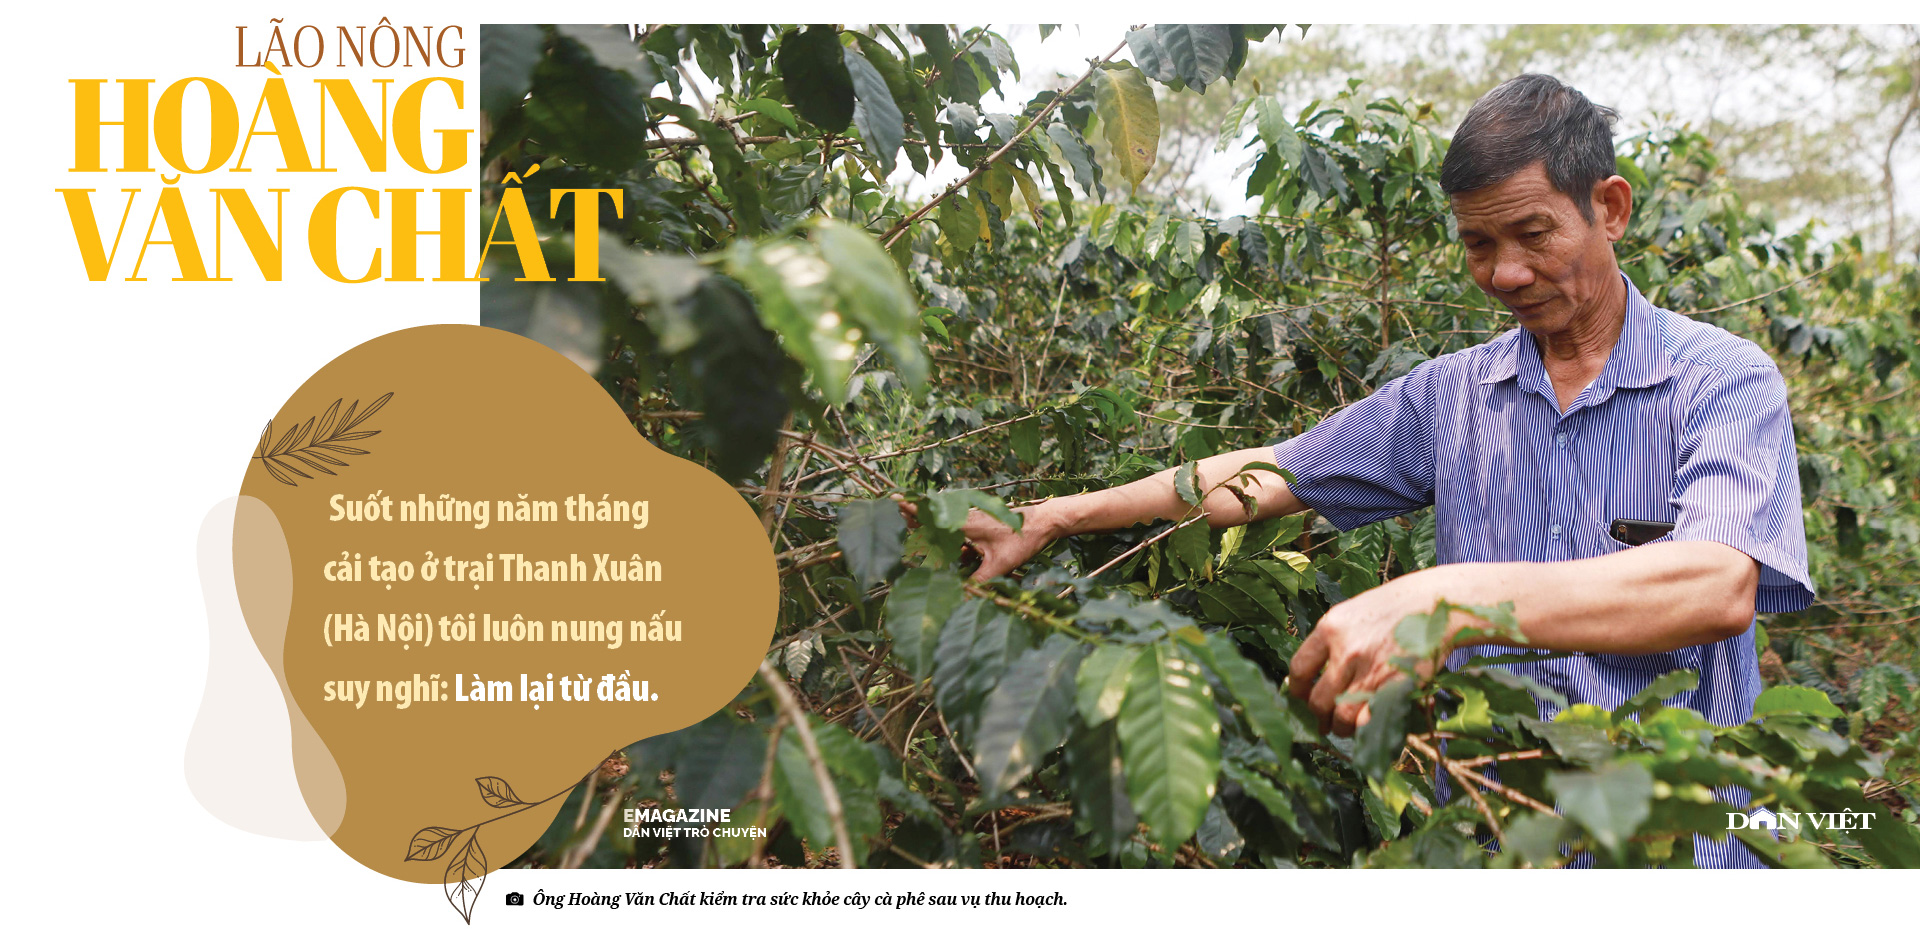 Lão nông người Thái ở Sơn La từng vào tù vì cây cà phê, giàu lên cũng nhờ cà phê - Ảnh 4.